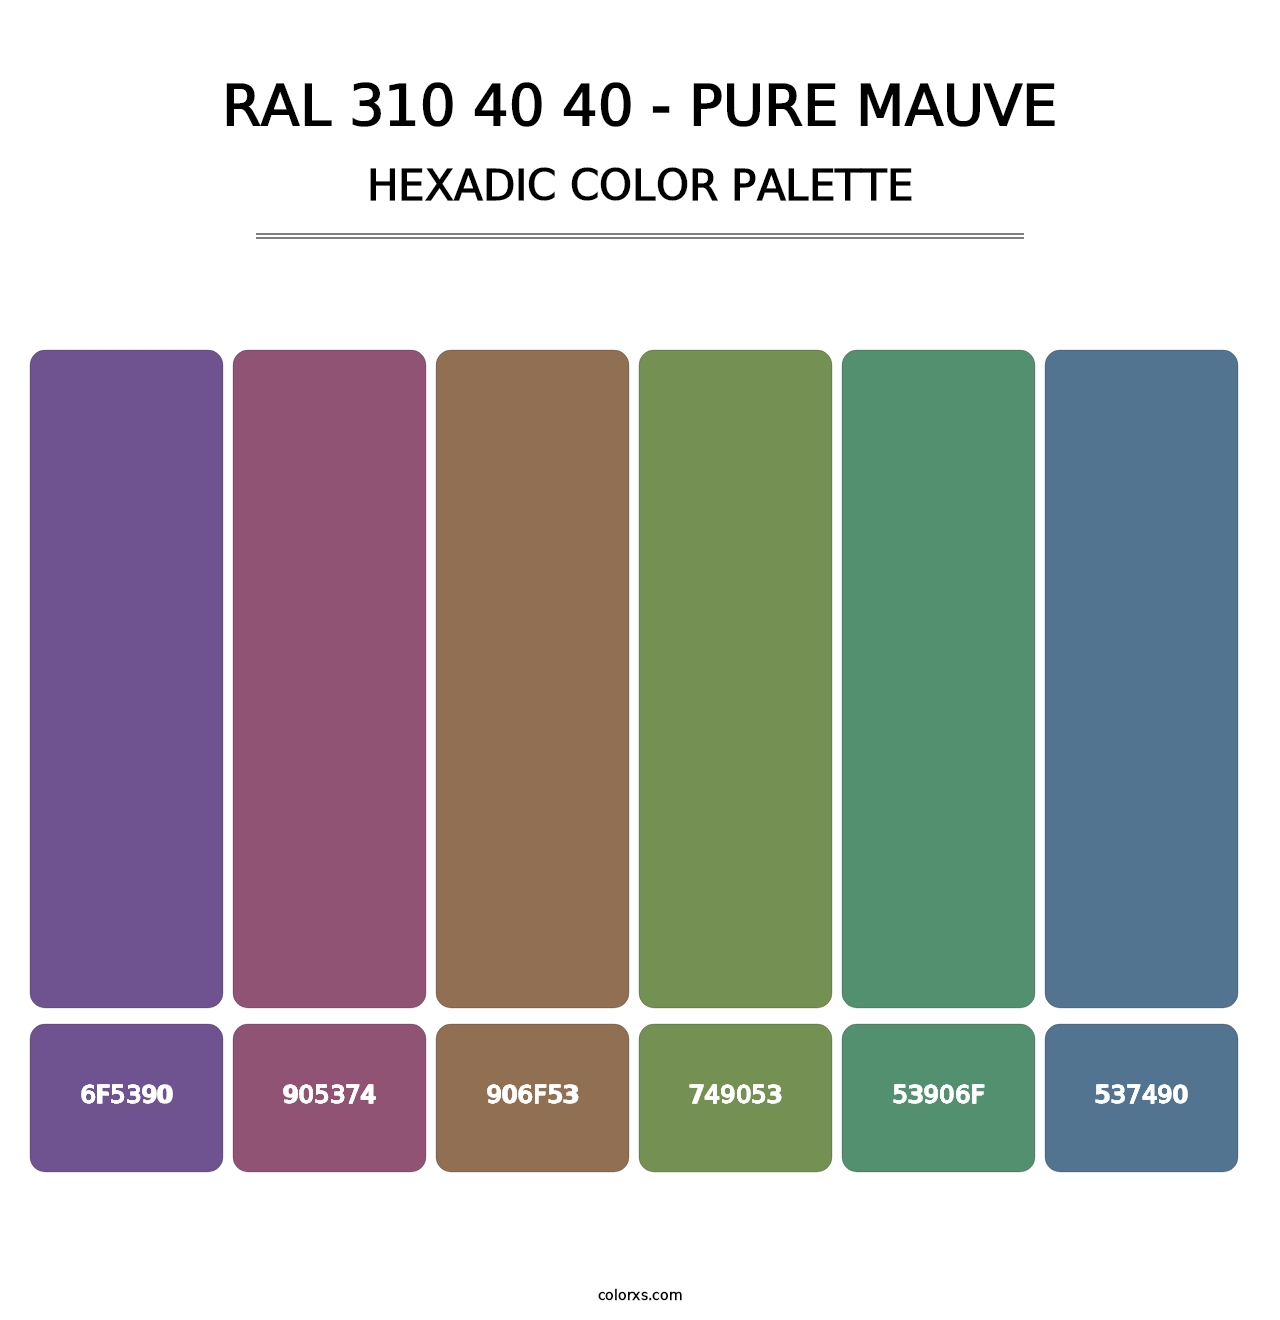 RAL 310 40 40 - Pure Mauve - Hexadic Color Palette